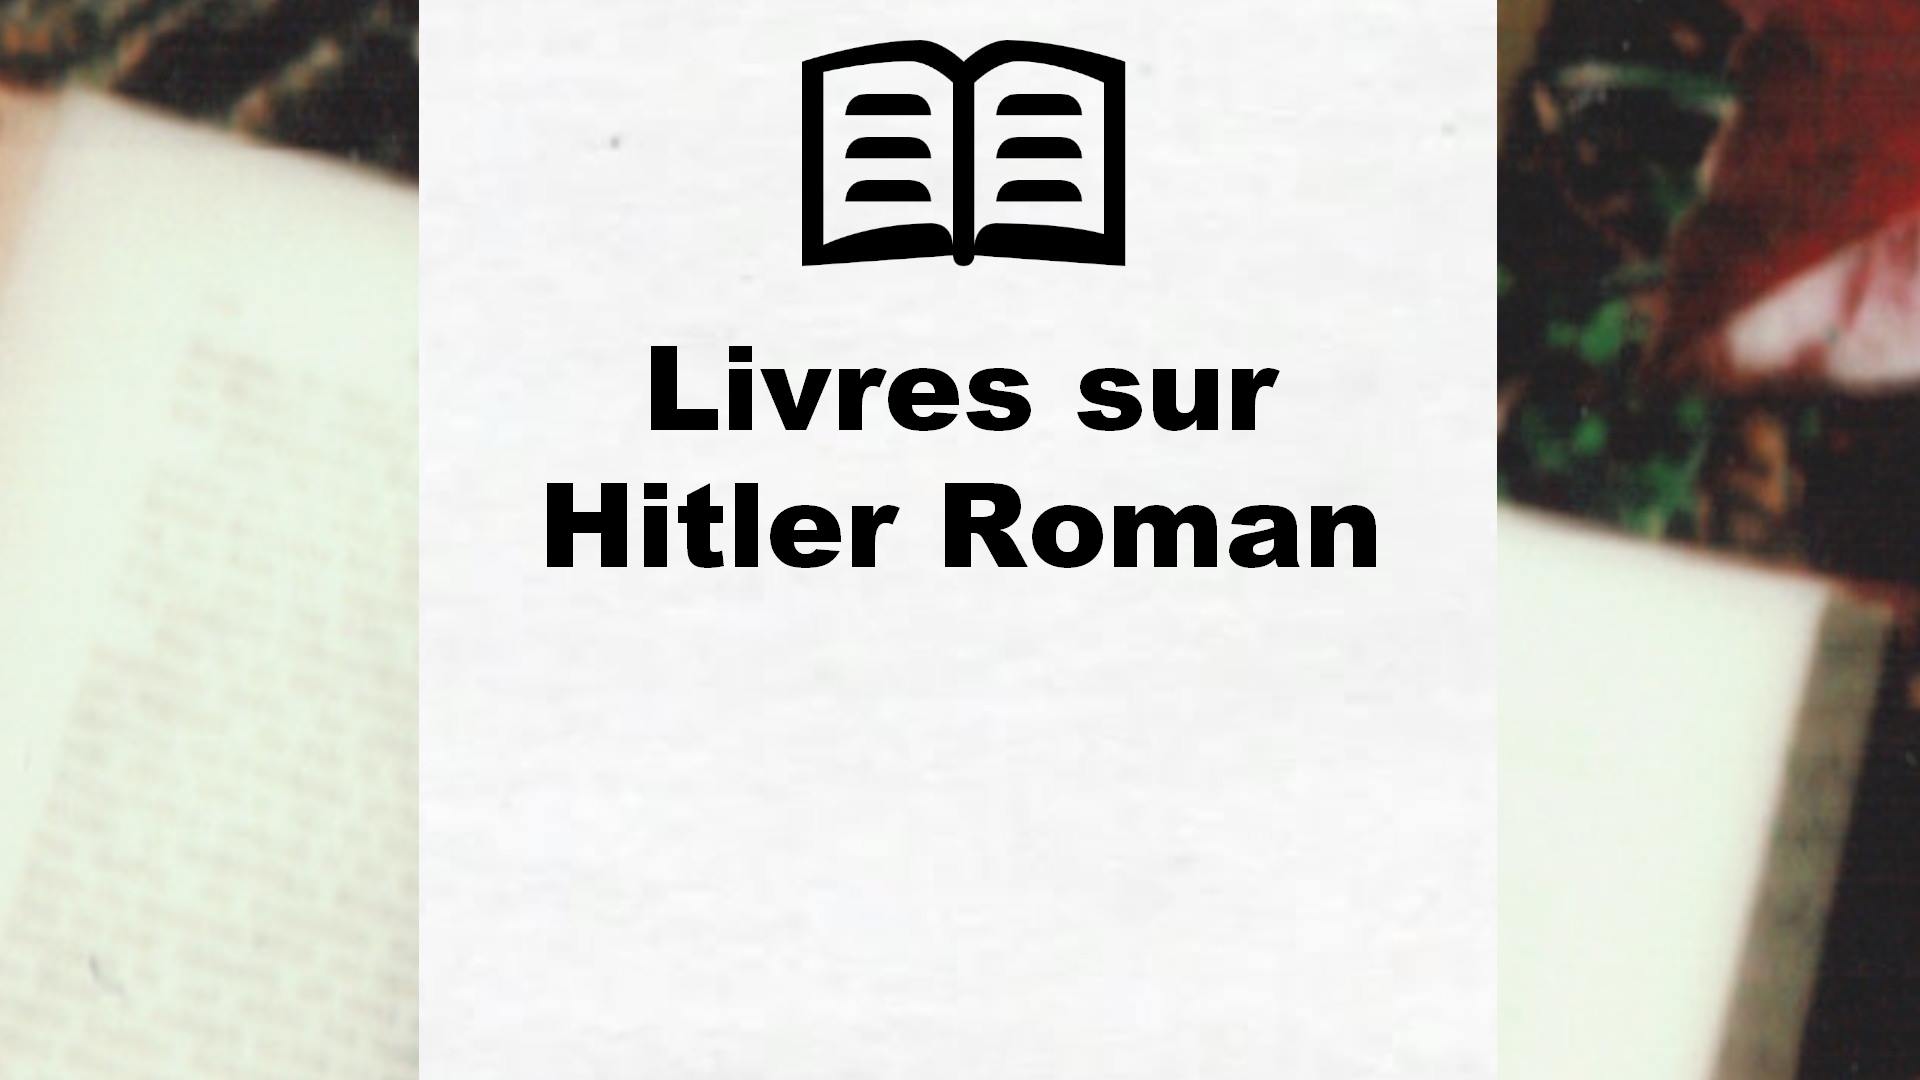 Livres sur Hitler Roman